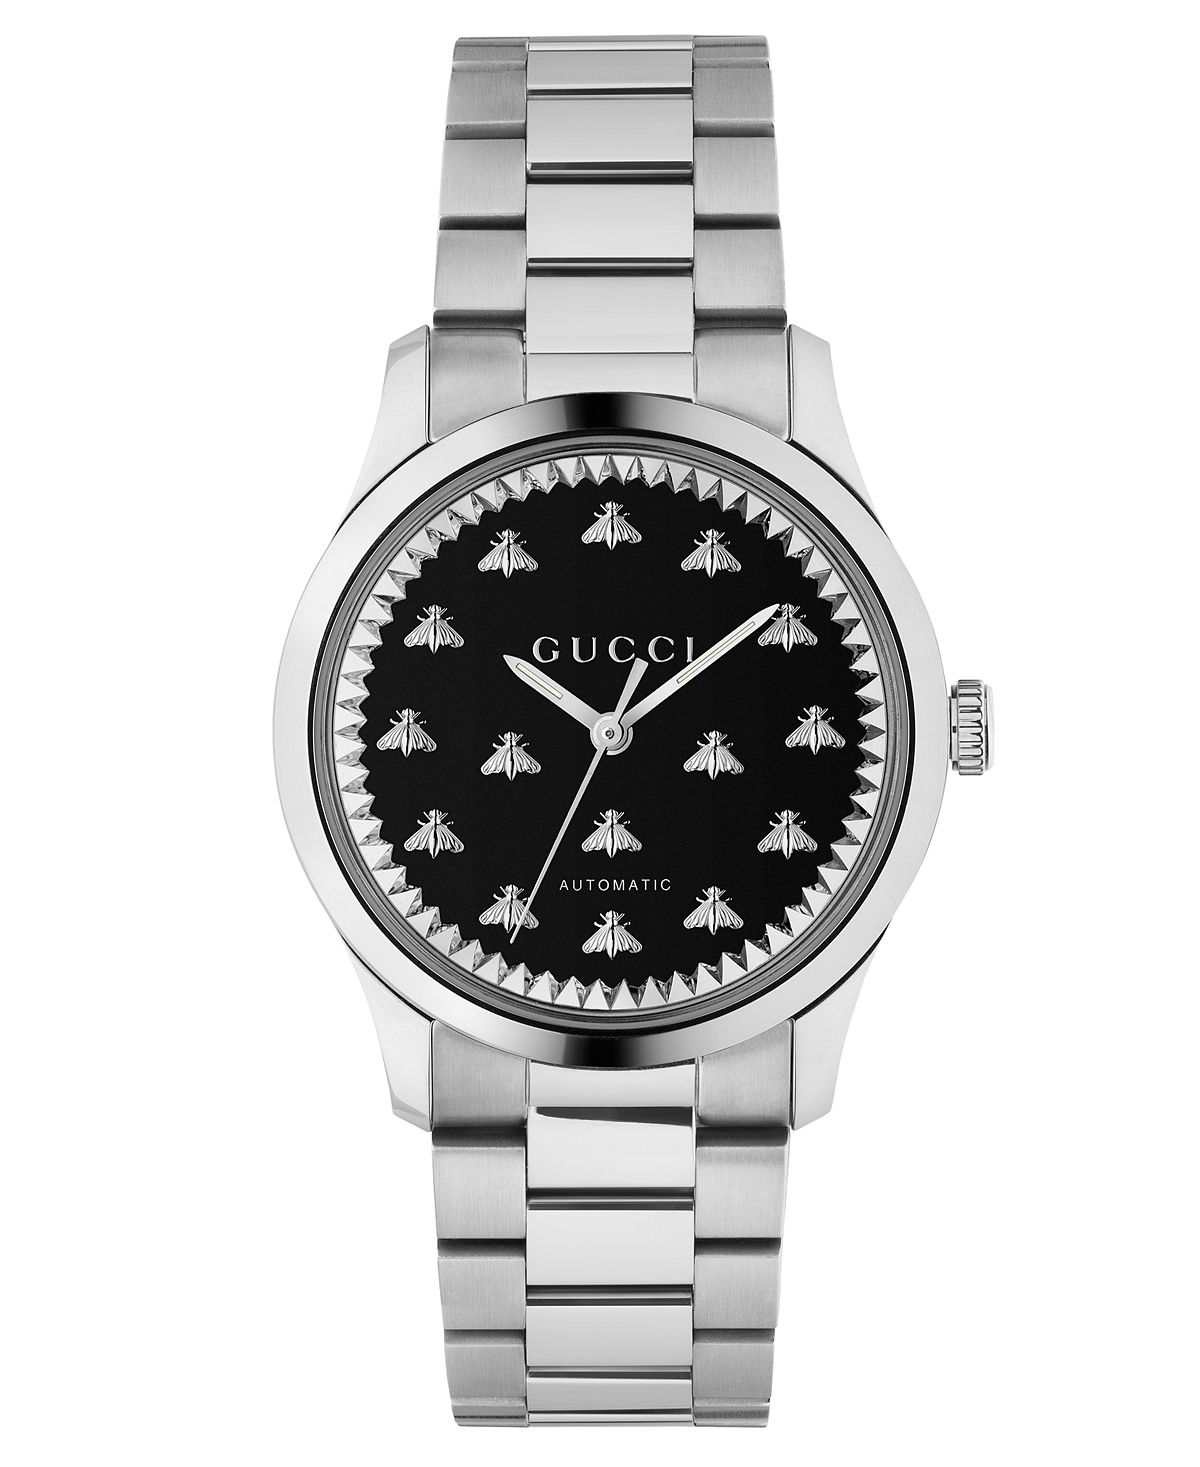 Унисекс Швейцарские автоматические часы с браслетом из нержавеющей стали 38 мм Gucci afawa 2020 jesus stainless steel necklaces